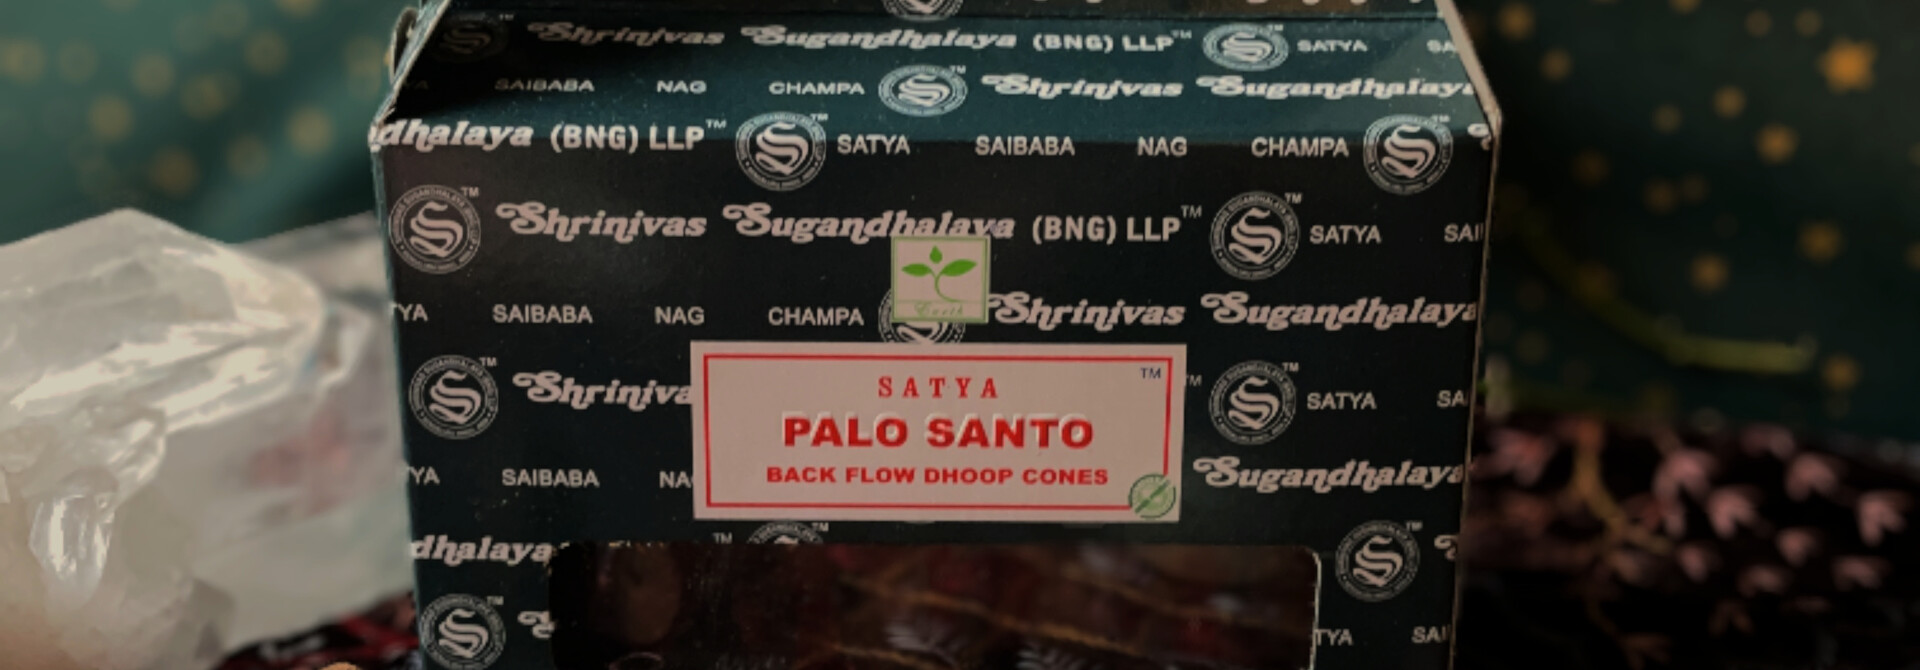 Backflow Incense Cones - Palo Santo